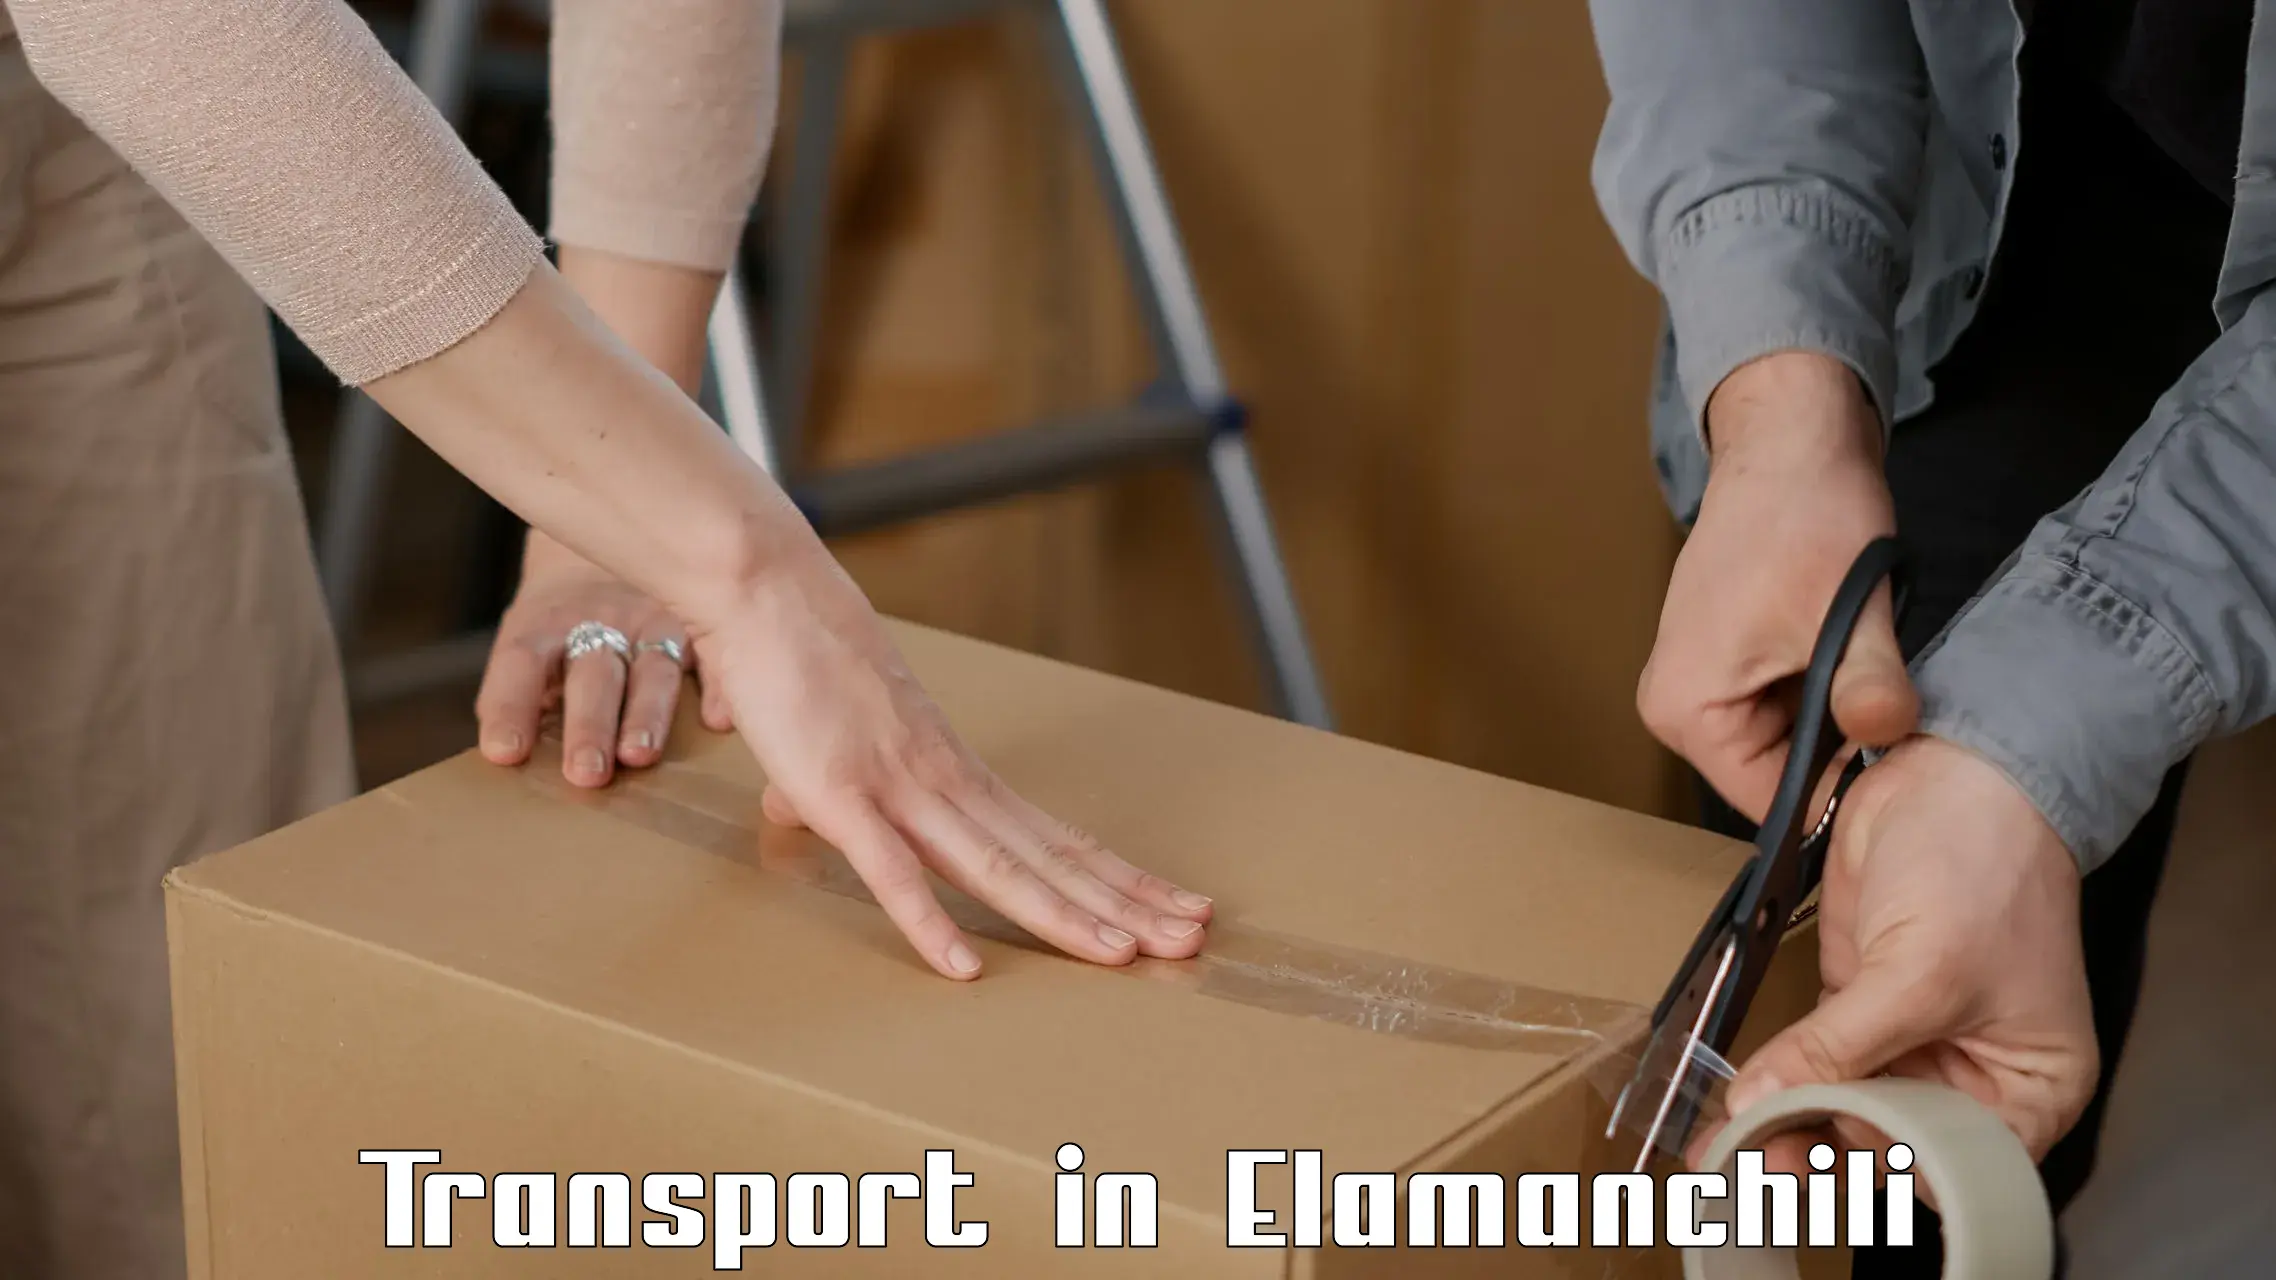 Furniture transport service in Elamanchili